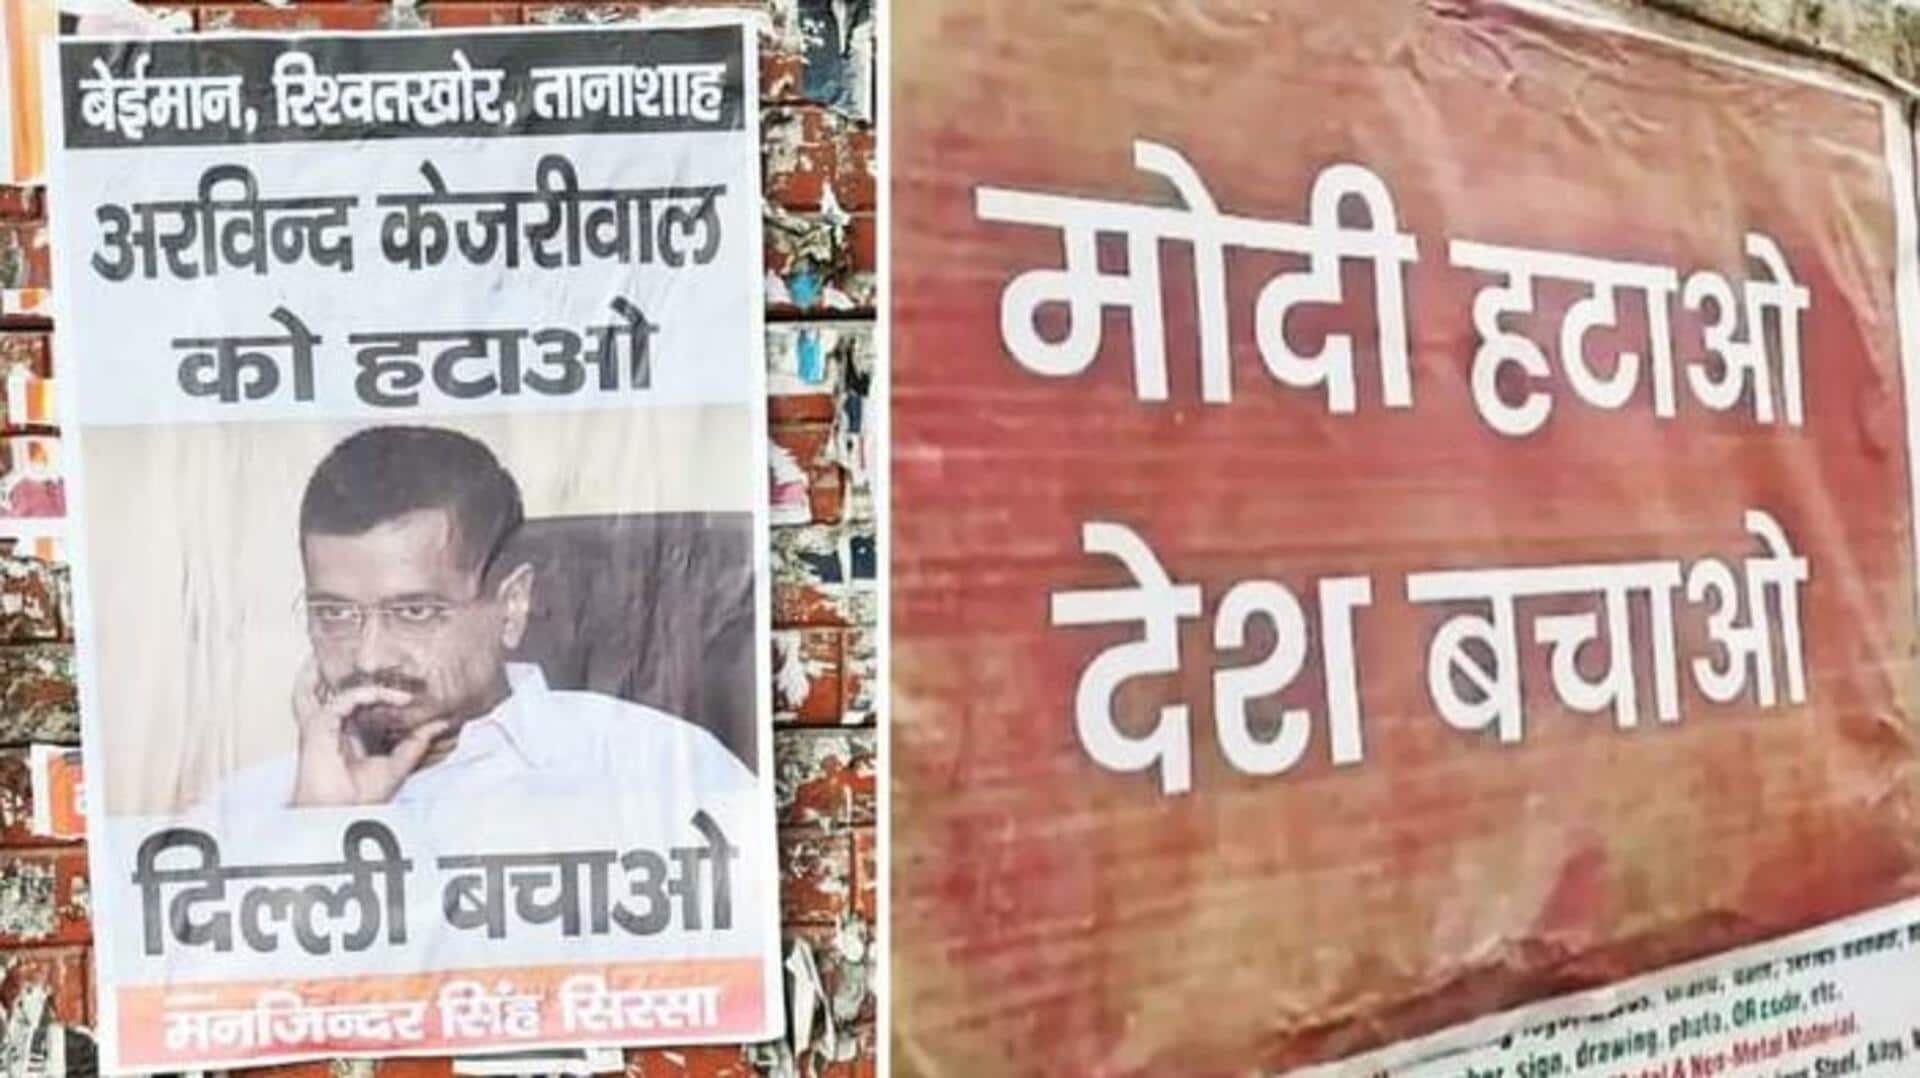 'मोदी हटाओ देश बचाओ' के बाद AAP का प्रधानमंत्री की शैक्षणिक योग्यता पर सवाल, पोस्टर छापे